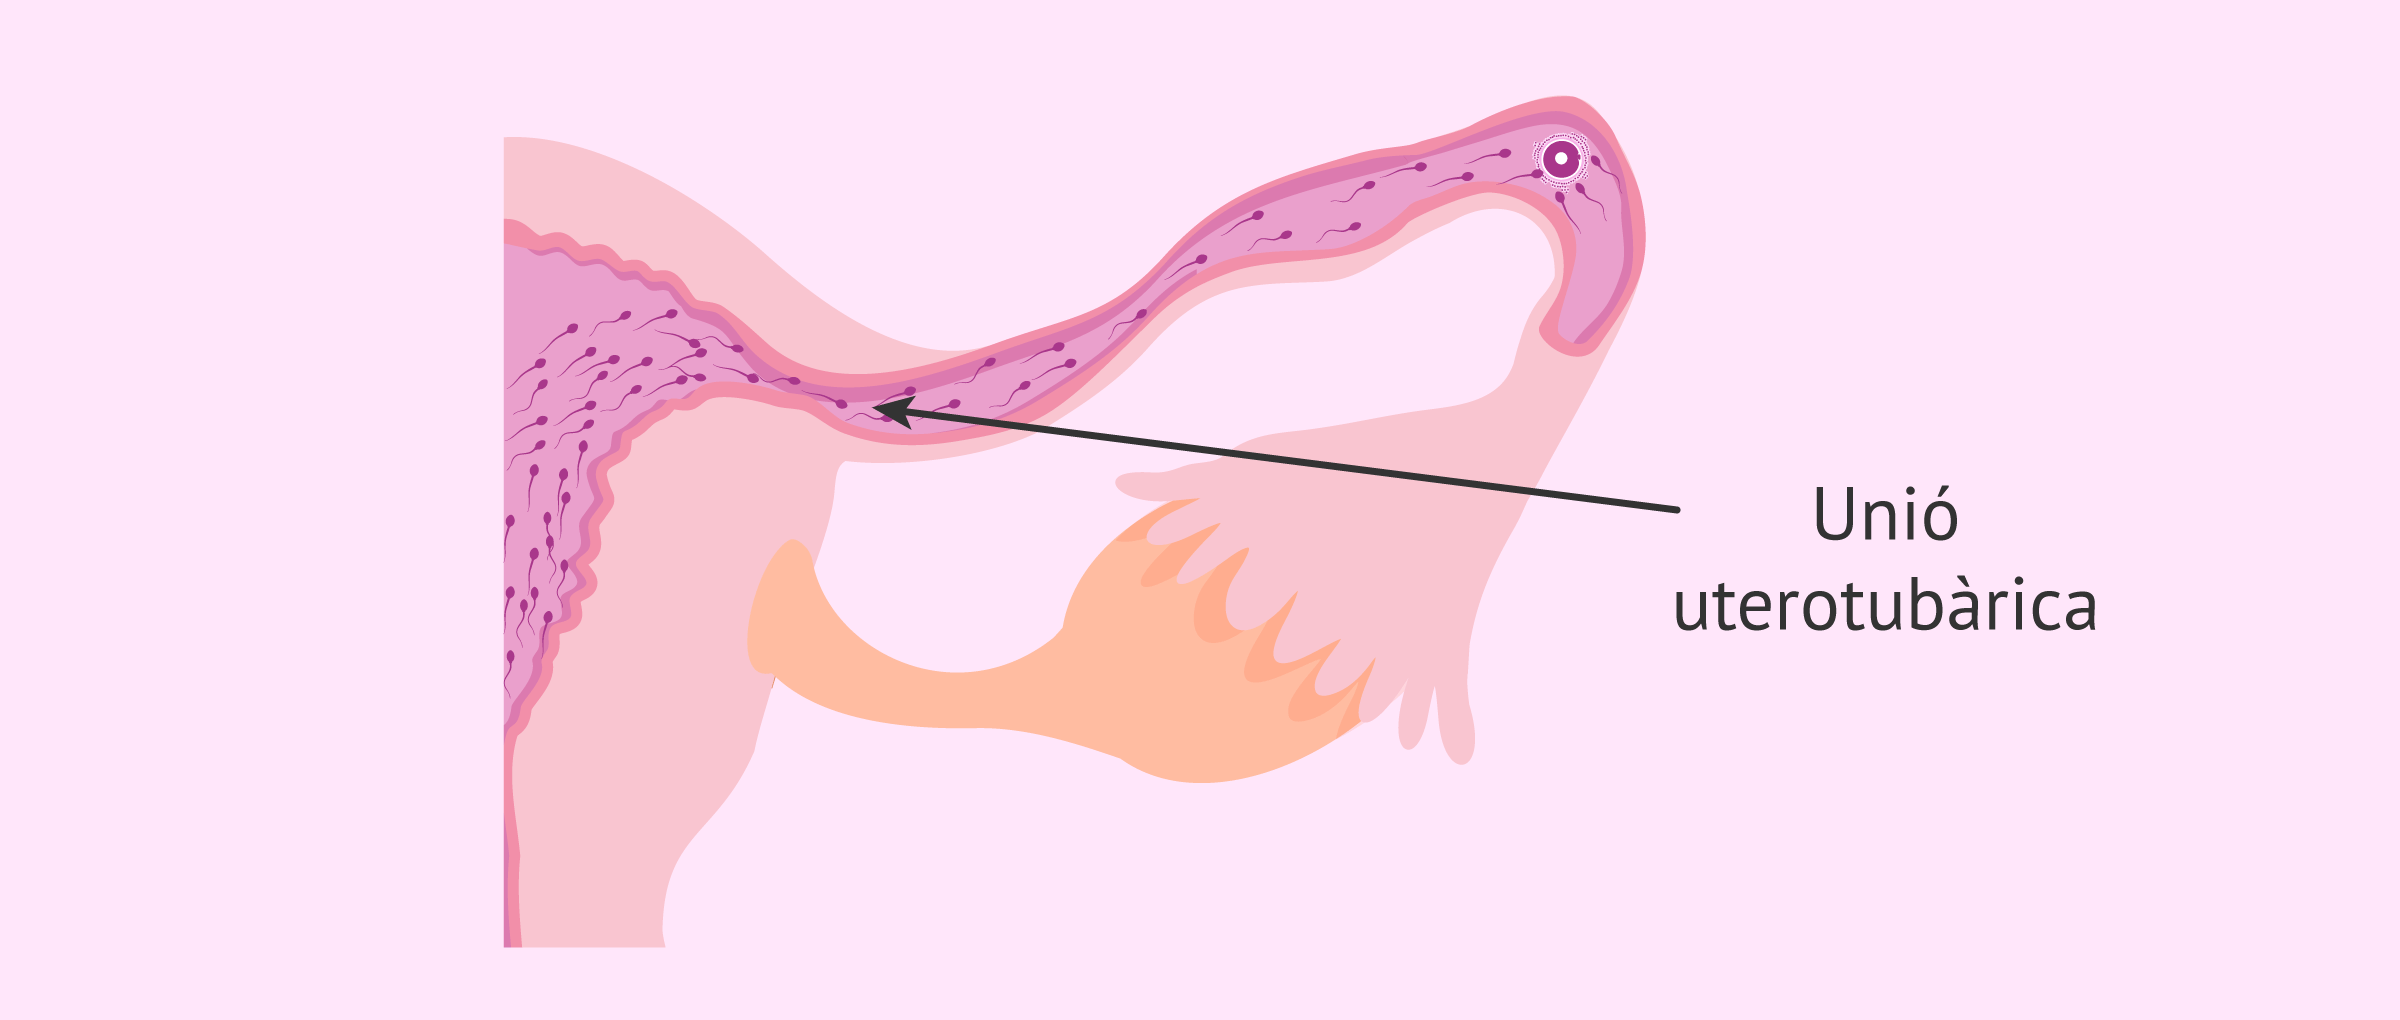 La unió uterotubárica: la zona més estreta del camí dels espermatozoides